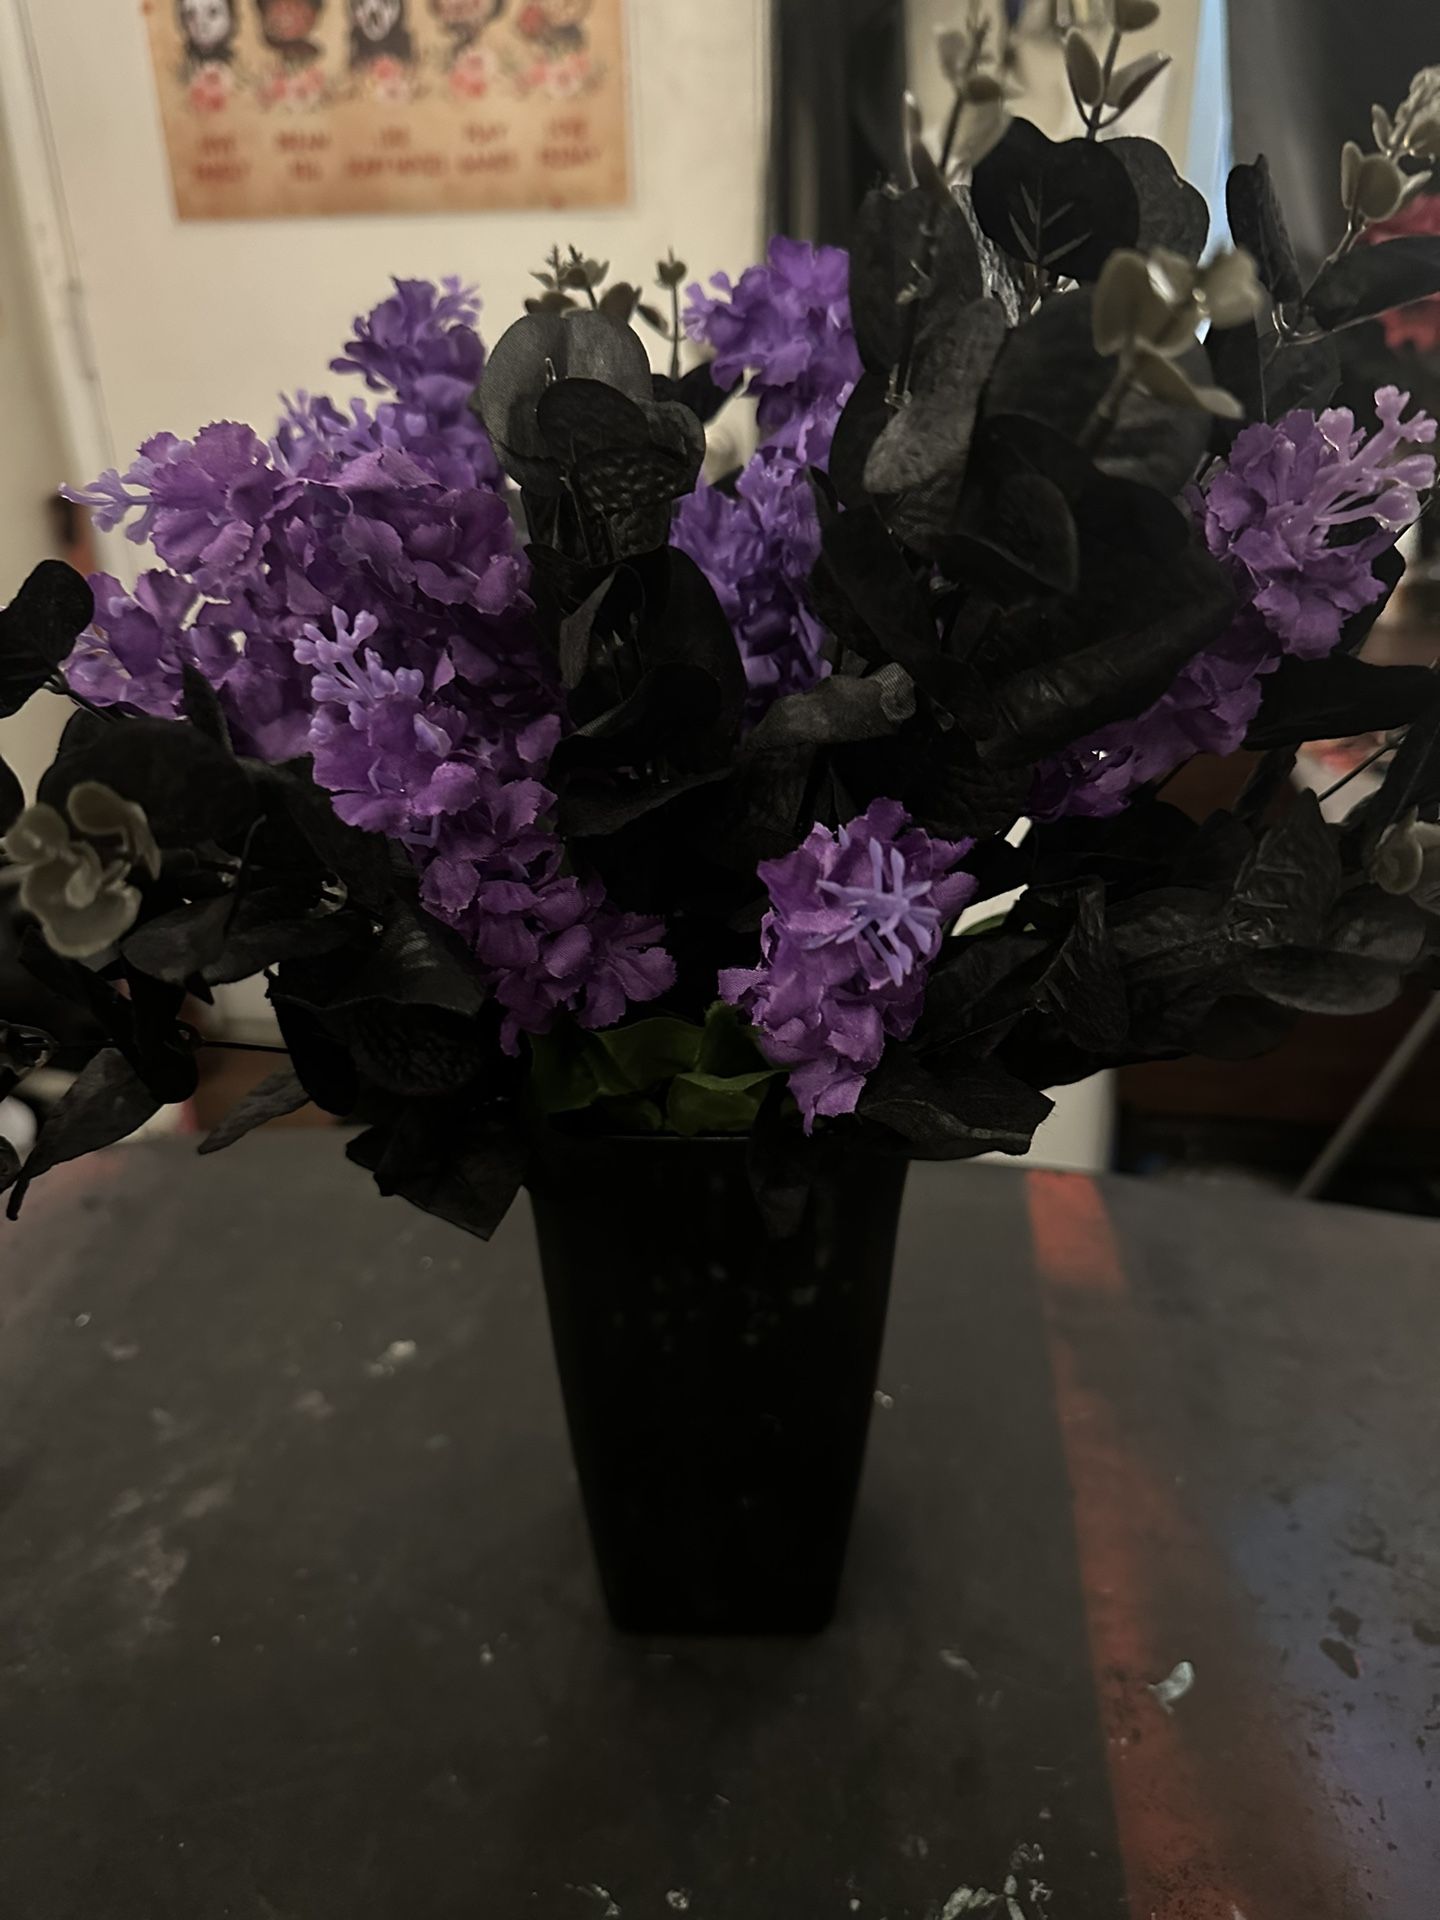 Black & Purple Flowers With Black Vase